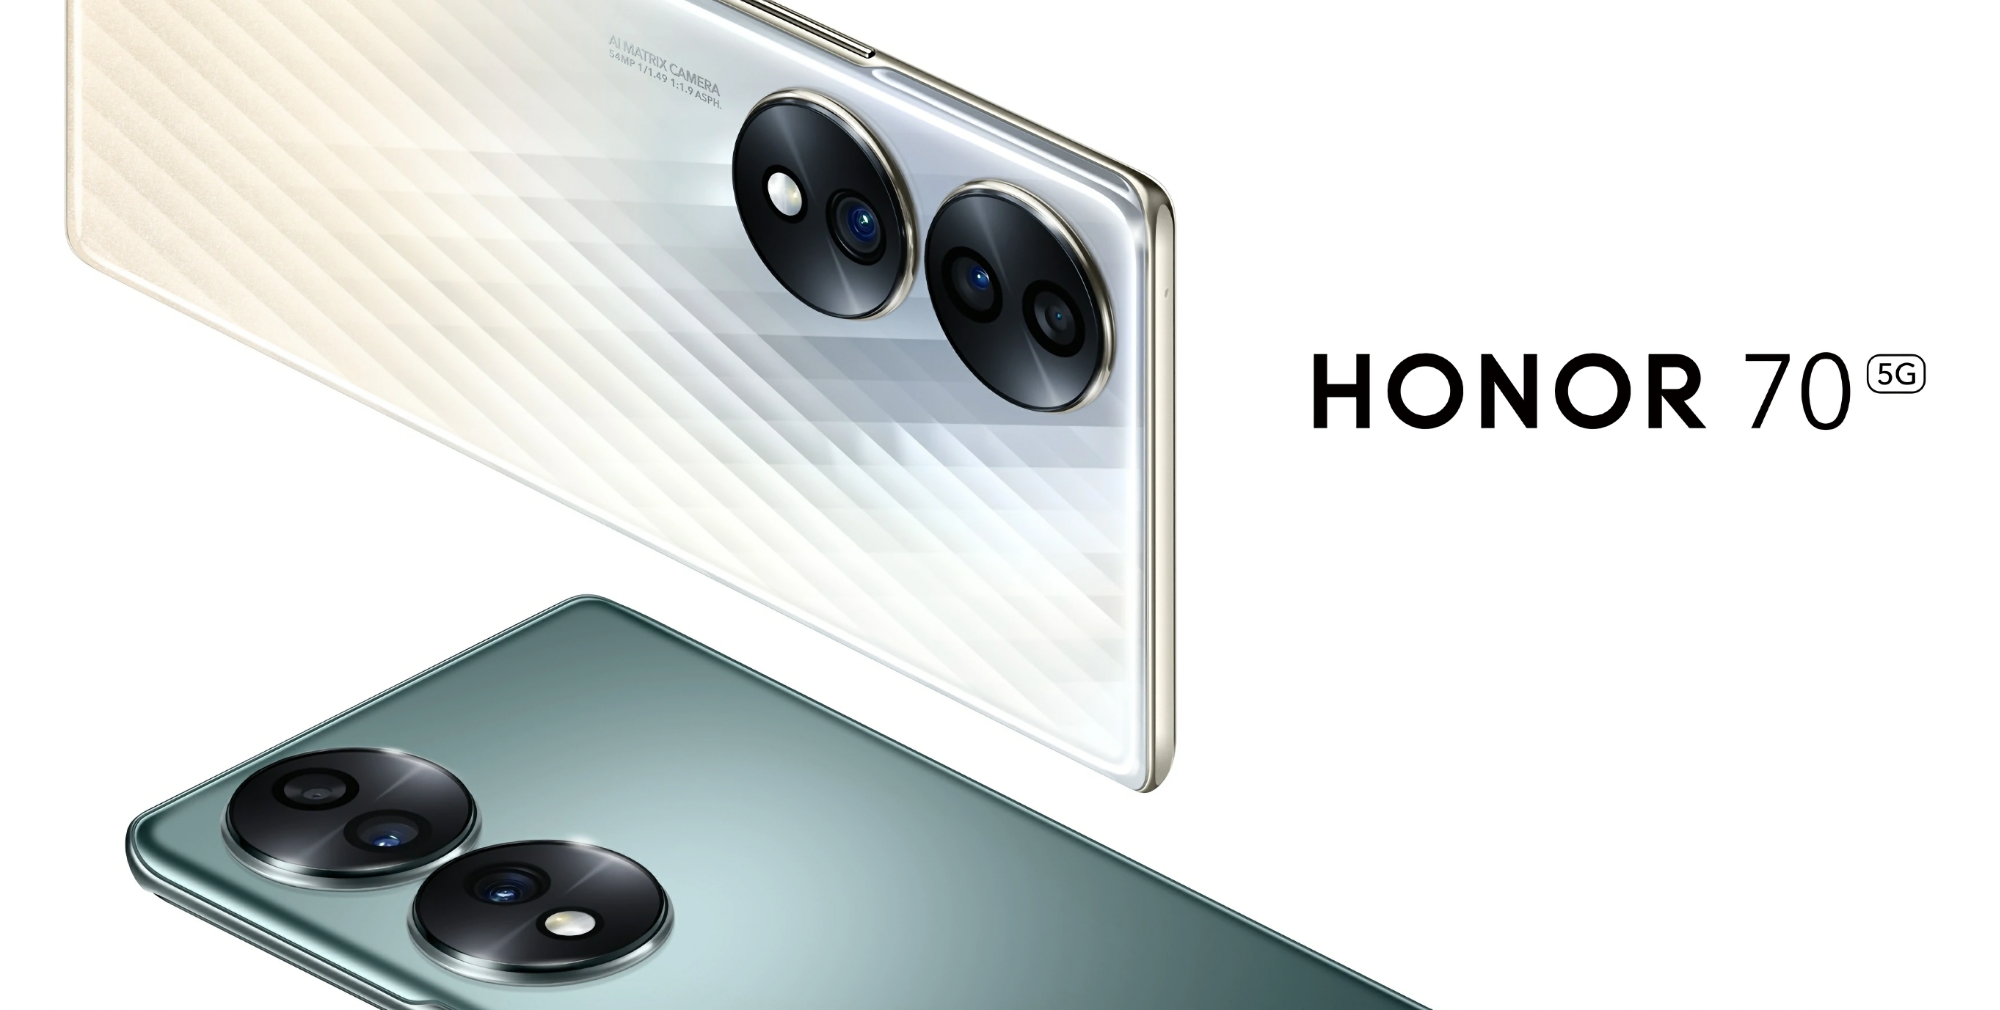 El Honor 70 con chip Snapdragon 778G+, pantalla AMOLED de 120Hz y cámara de 54MP se lanza globalmente